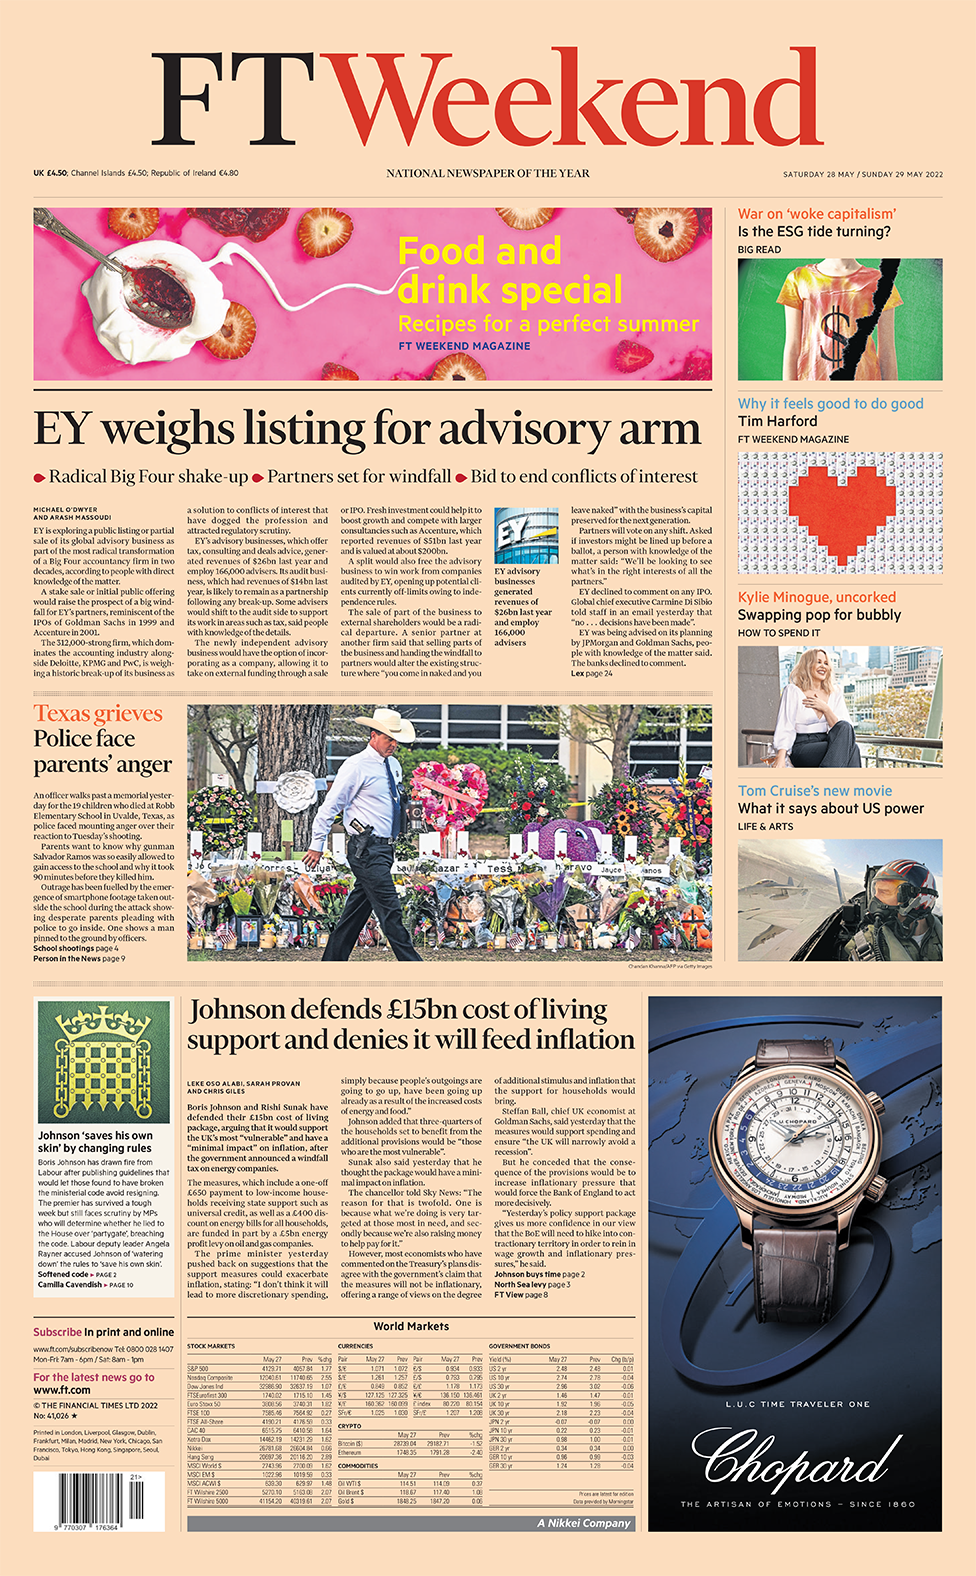 Заголовок в Financial Times гласит: «EY взвешивает листинг для консультационного подразделения»